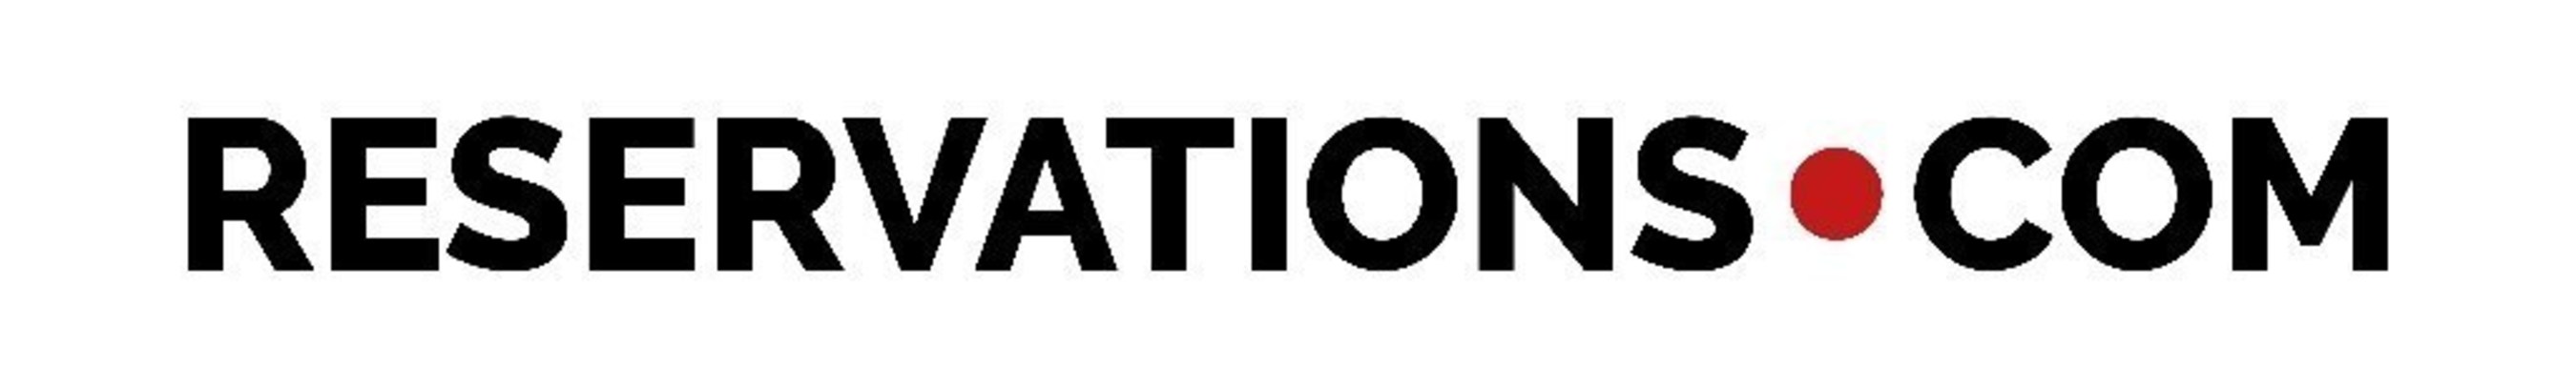 Reservations.com logo